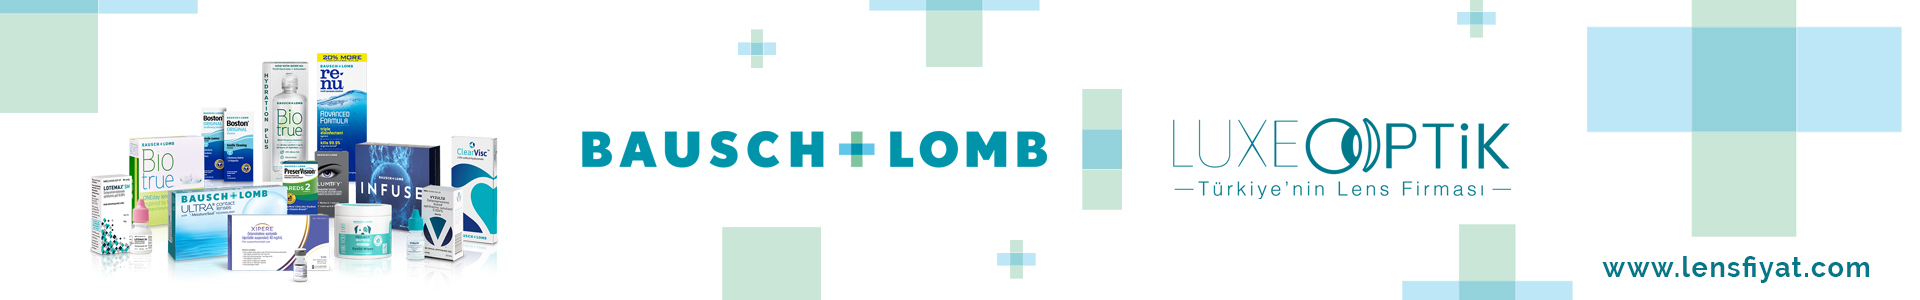 Bausch + Lomb Lens | Çeşitleri ve Fiyatları